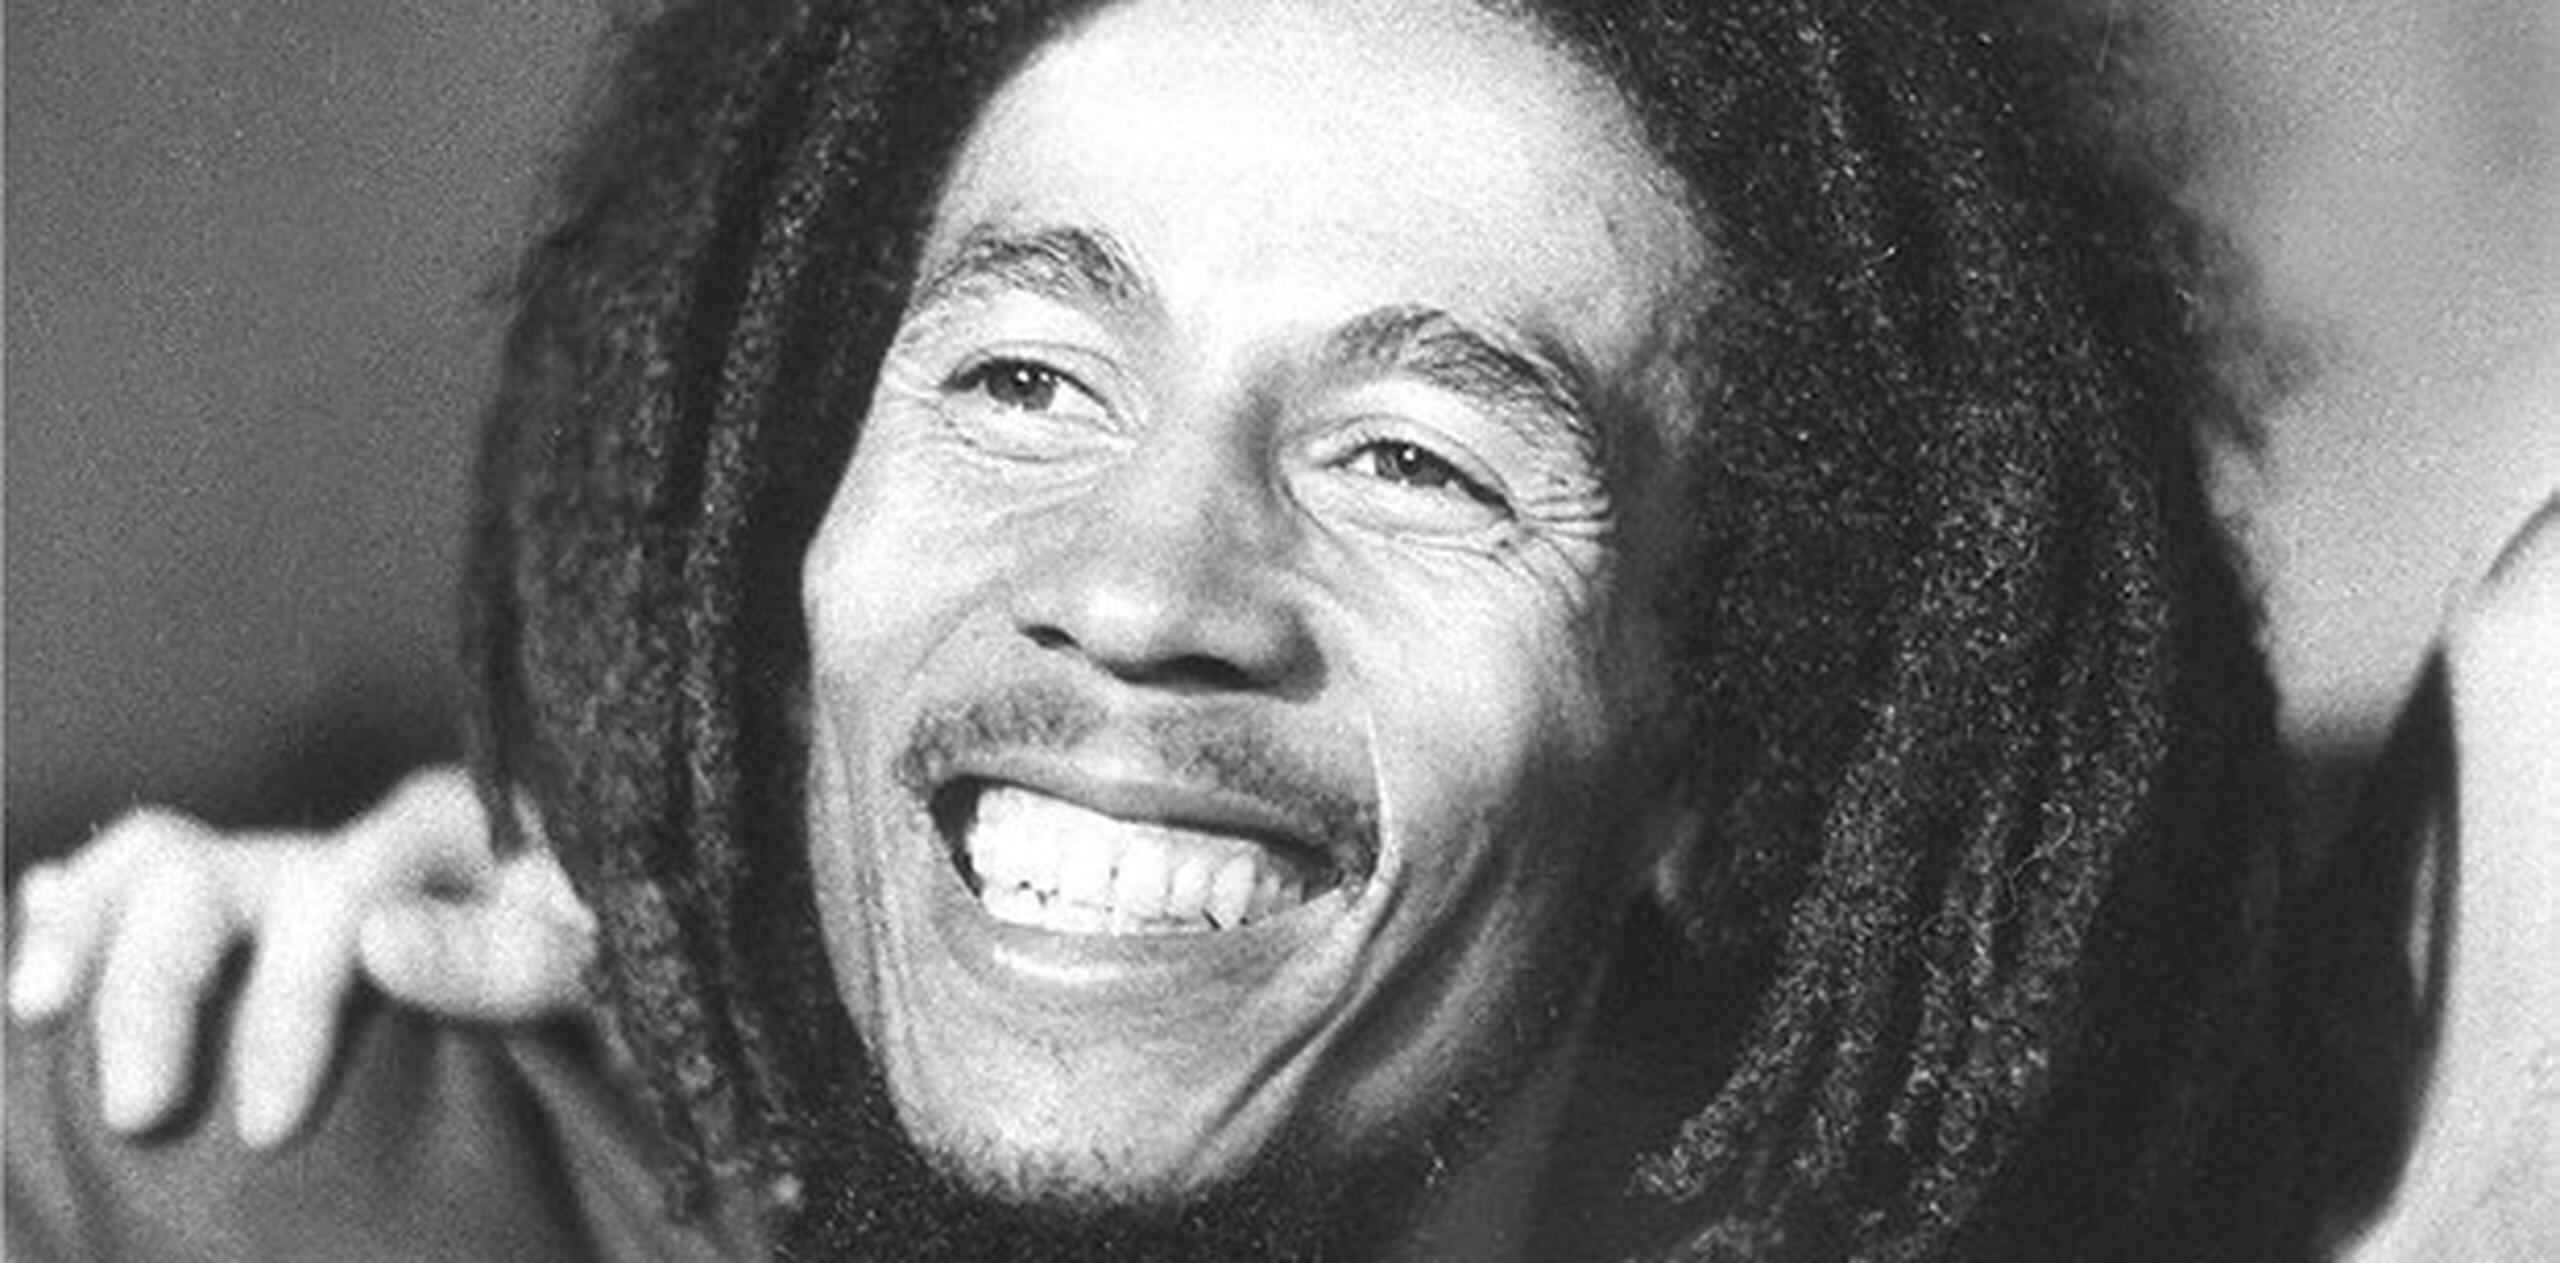 Marley falleció en 1981 a sus 36 años. (Archivo)